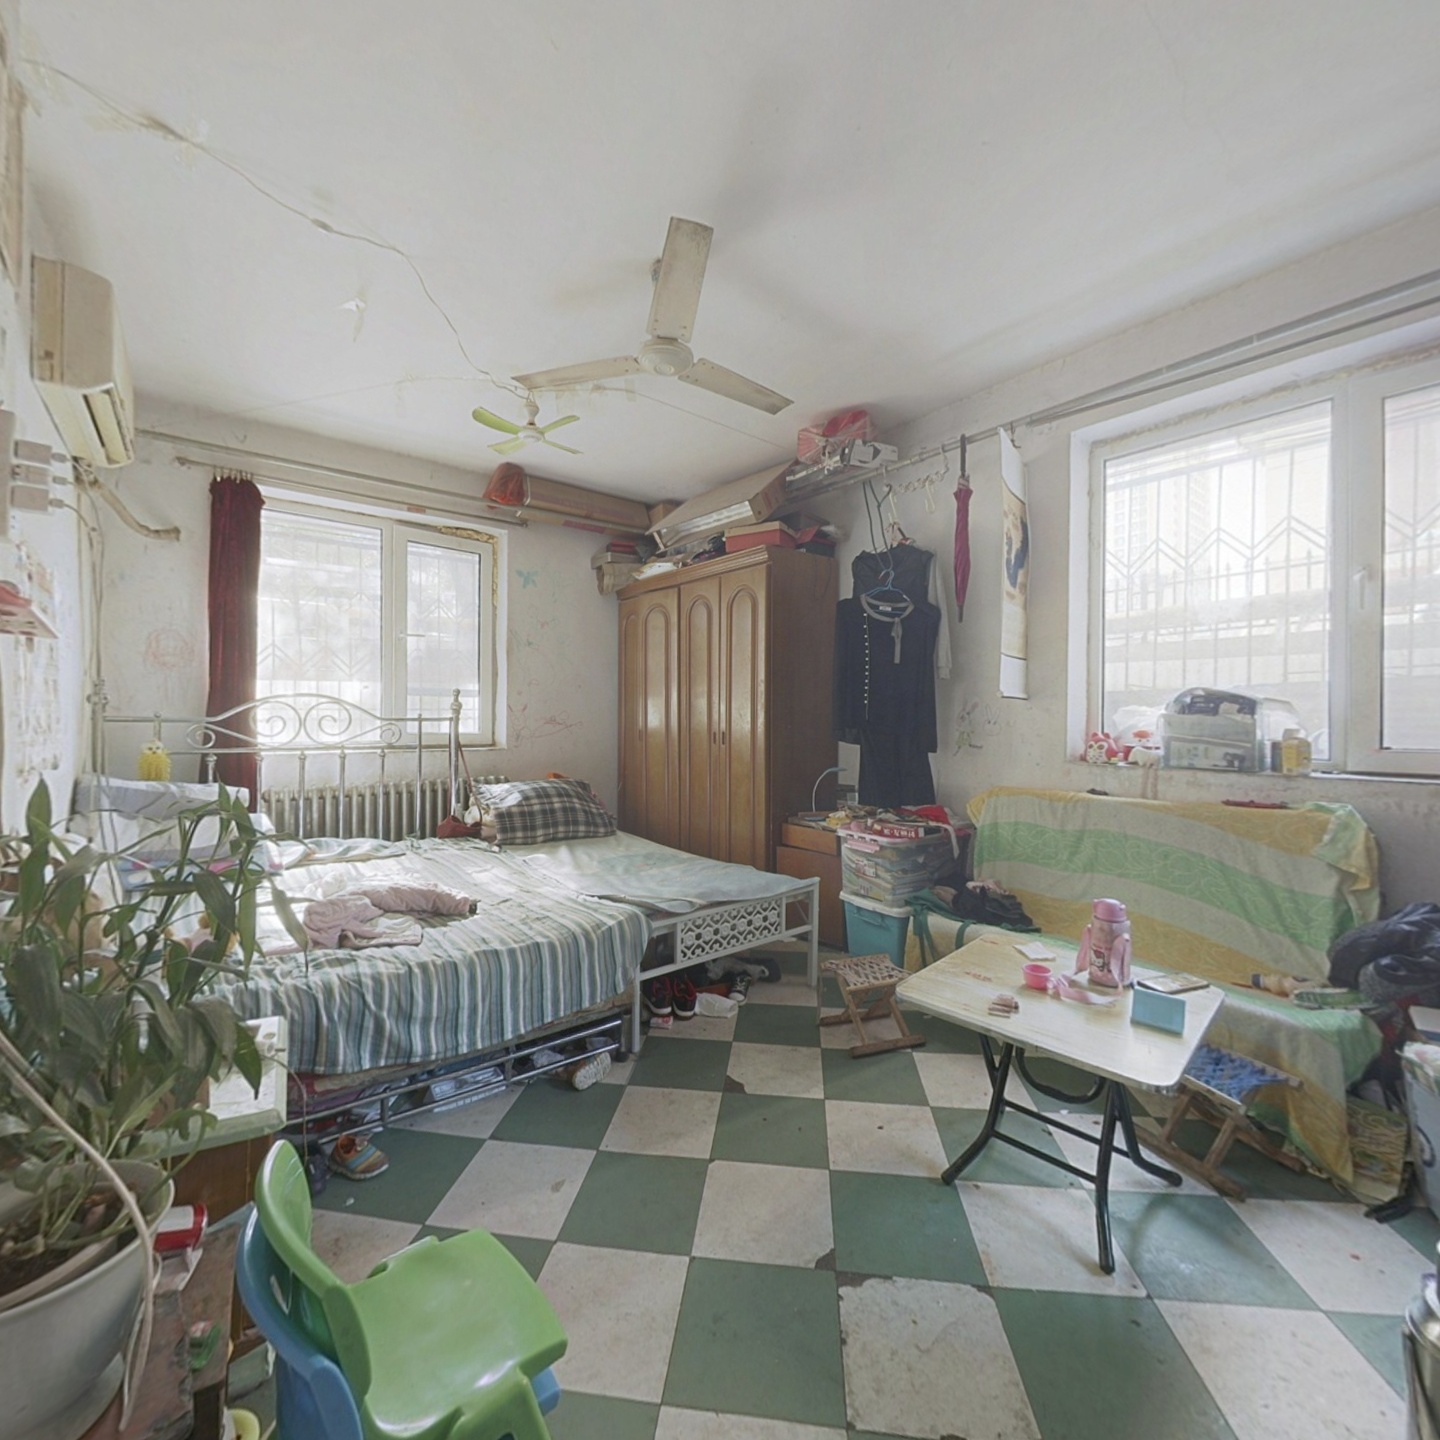 湘江道 私产两室 一楼 适合老人居住